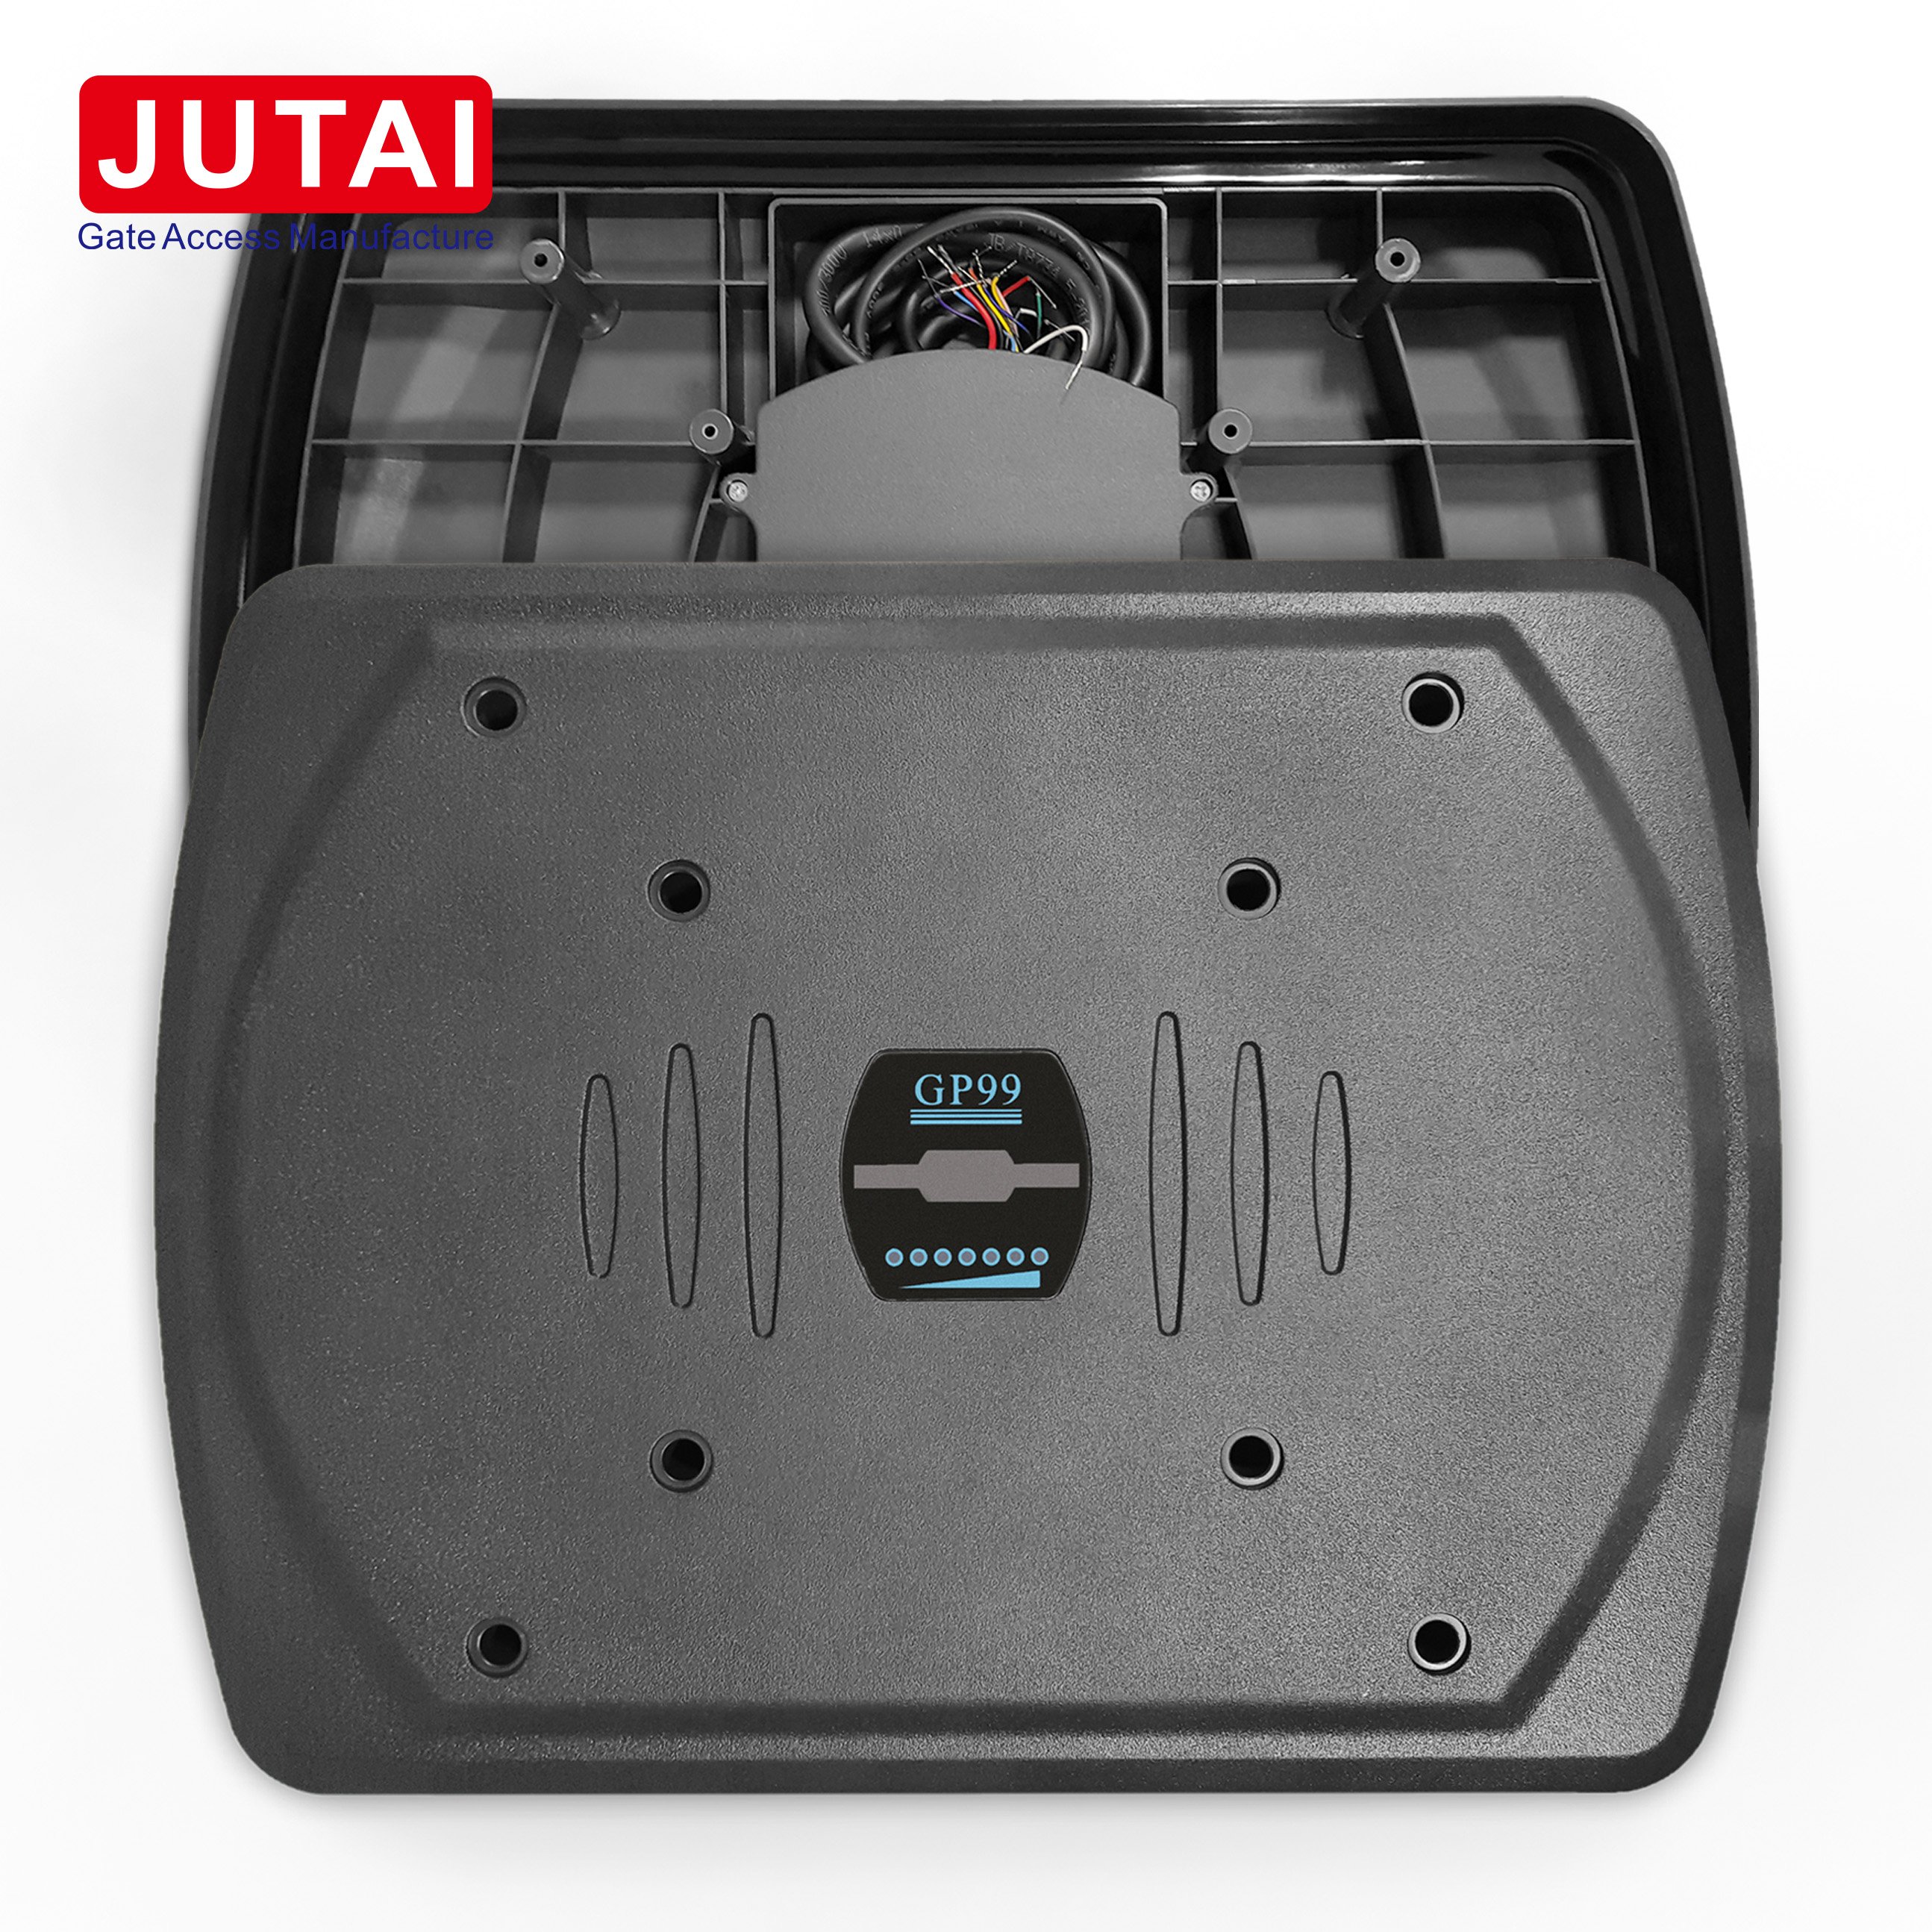 JUTAI GP99 Lector de largo alcance de proximidad de 125kHz con tarjeta EM